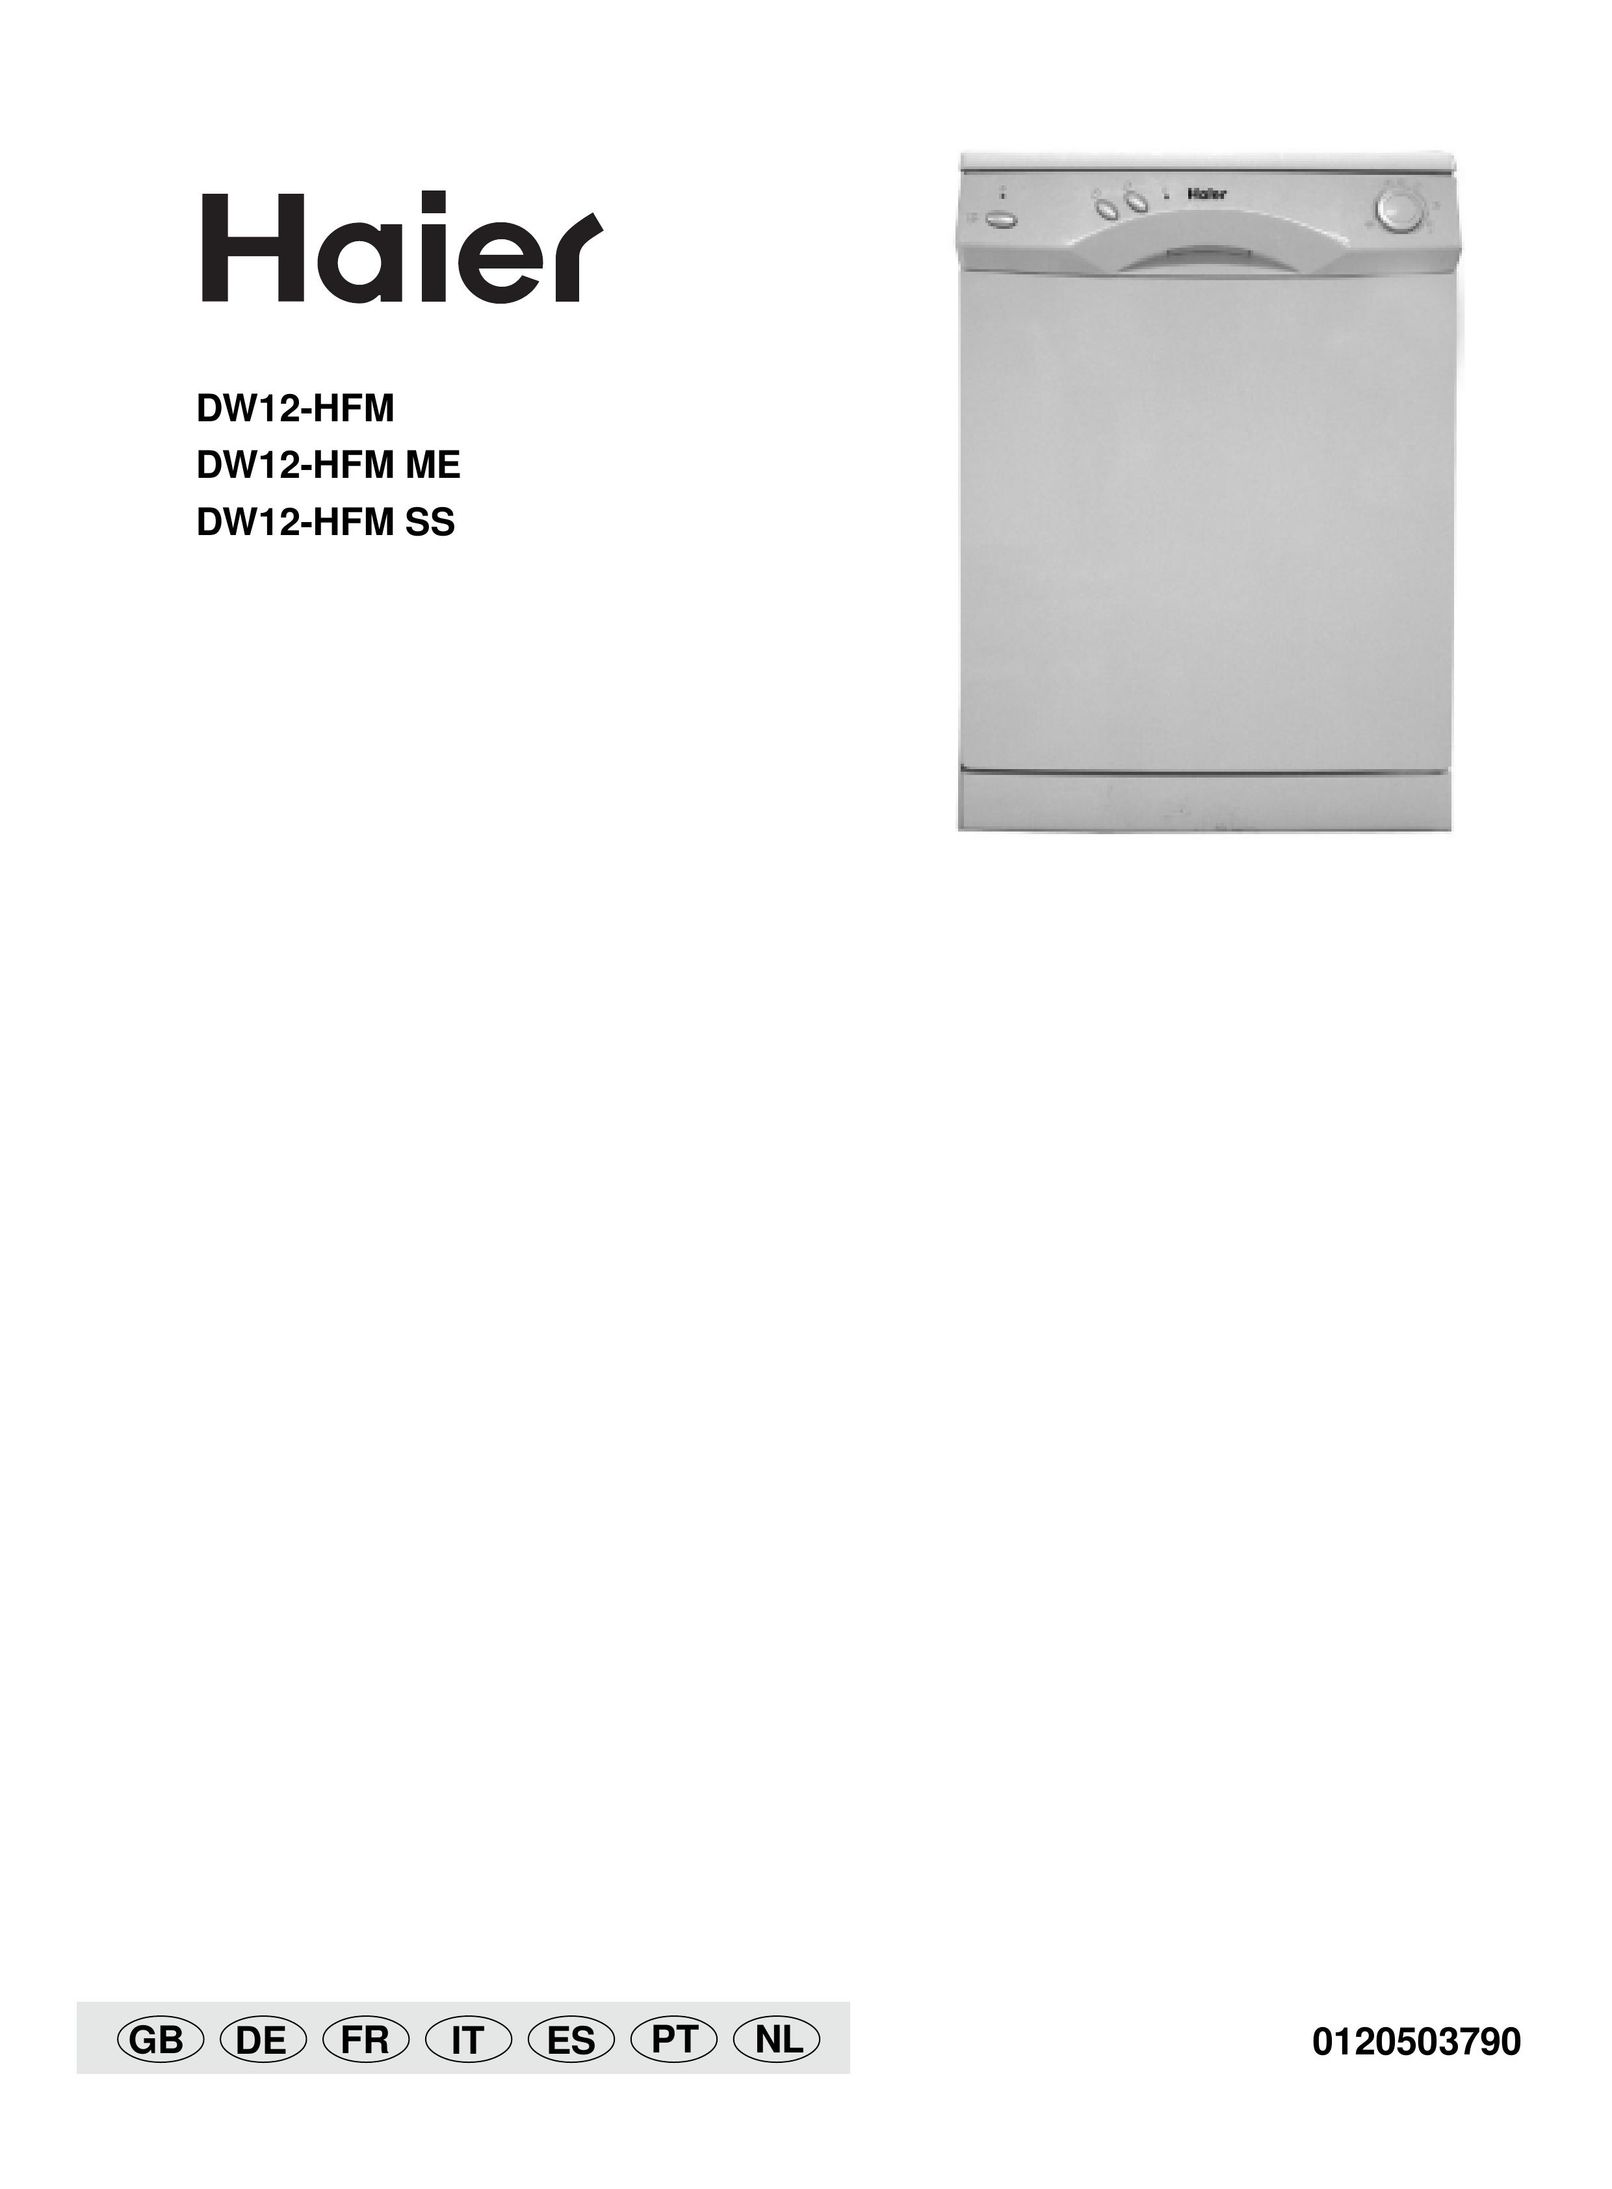 Haier DW12-HFM Dishwasher User Manual